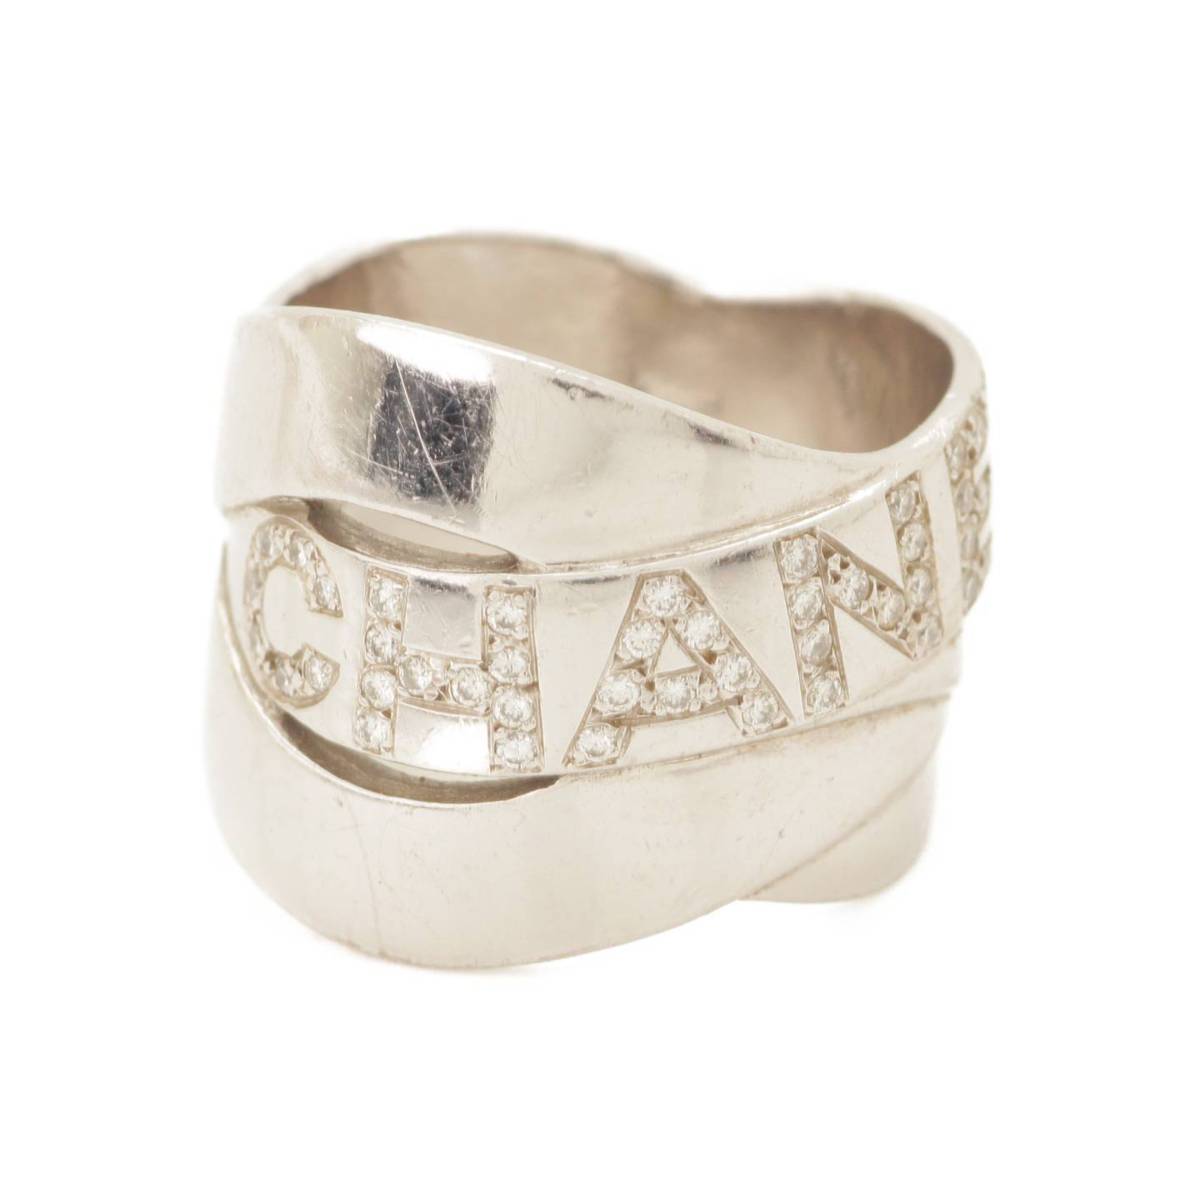 シャネル(Chanel) ボルディック ダイヤ リング 指輪 750 K18WG 10.9g ...